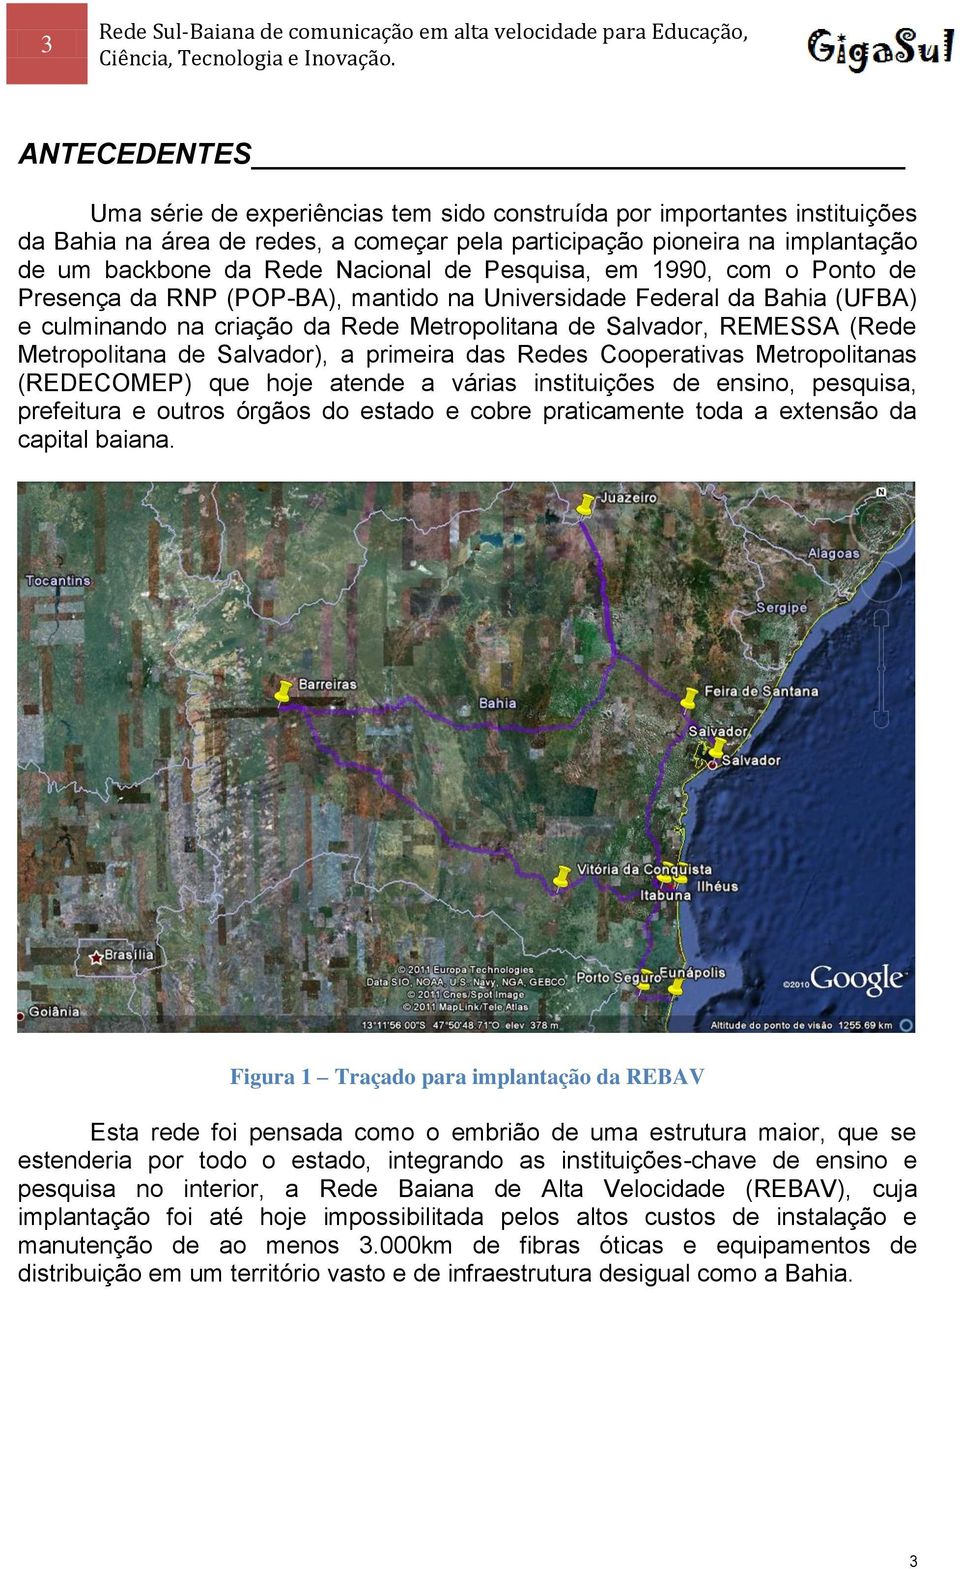 Metropolitana de Salvador), a primeira das Redes Cooperativas Metropolitanas (REDECOMEP) que hoje atende a várias instituições de ensino, pesquisa, prefeitura e outros órgãos do estado e cobre